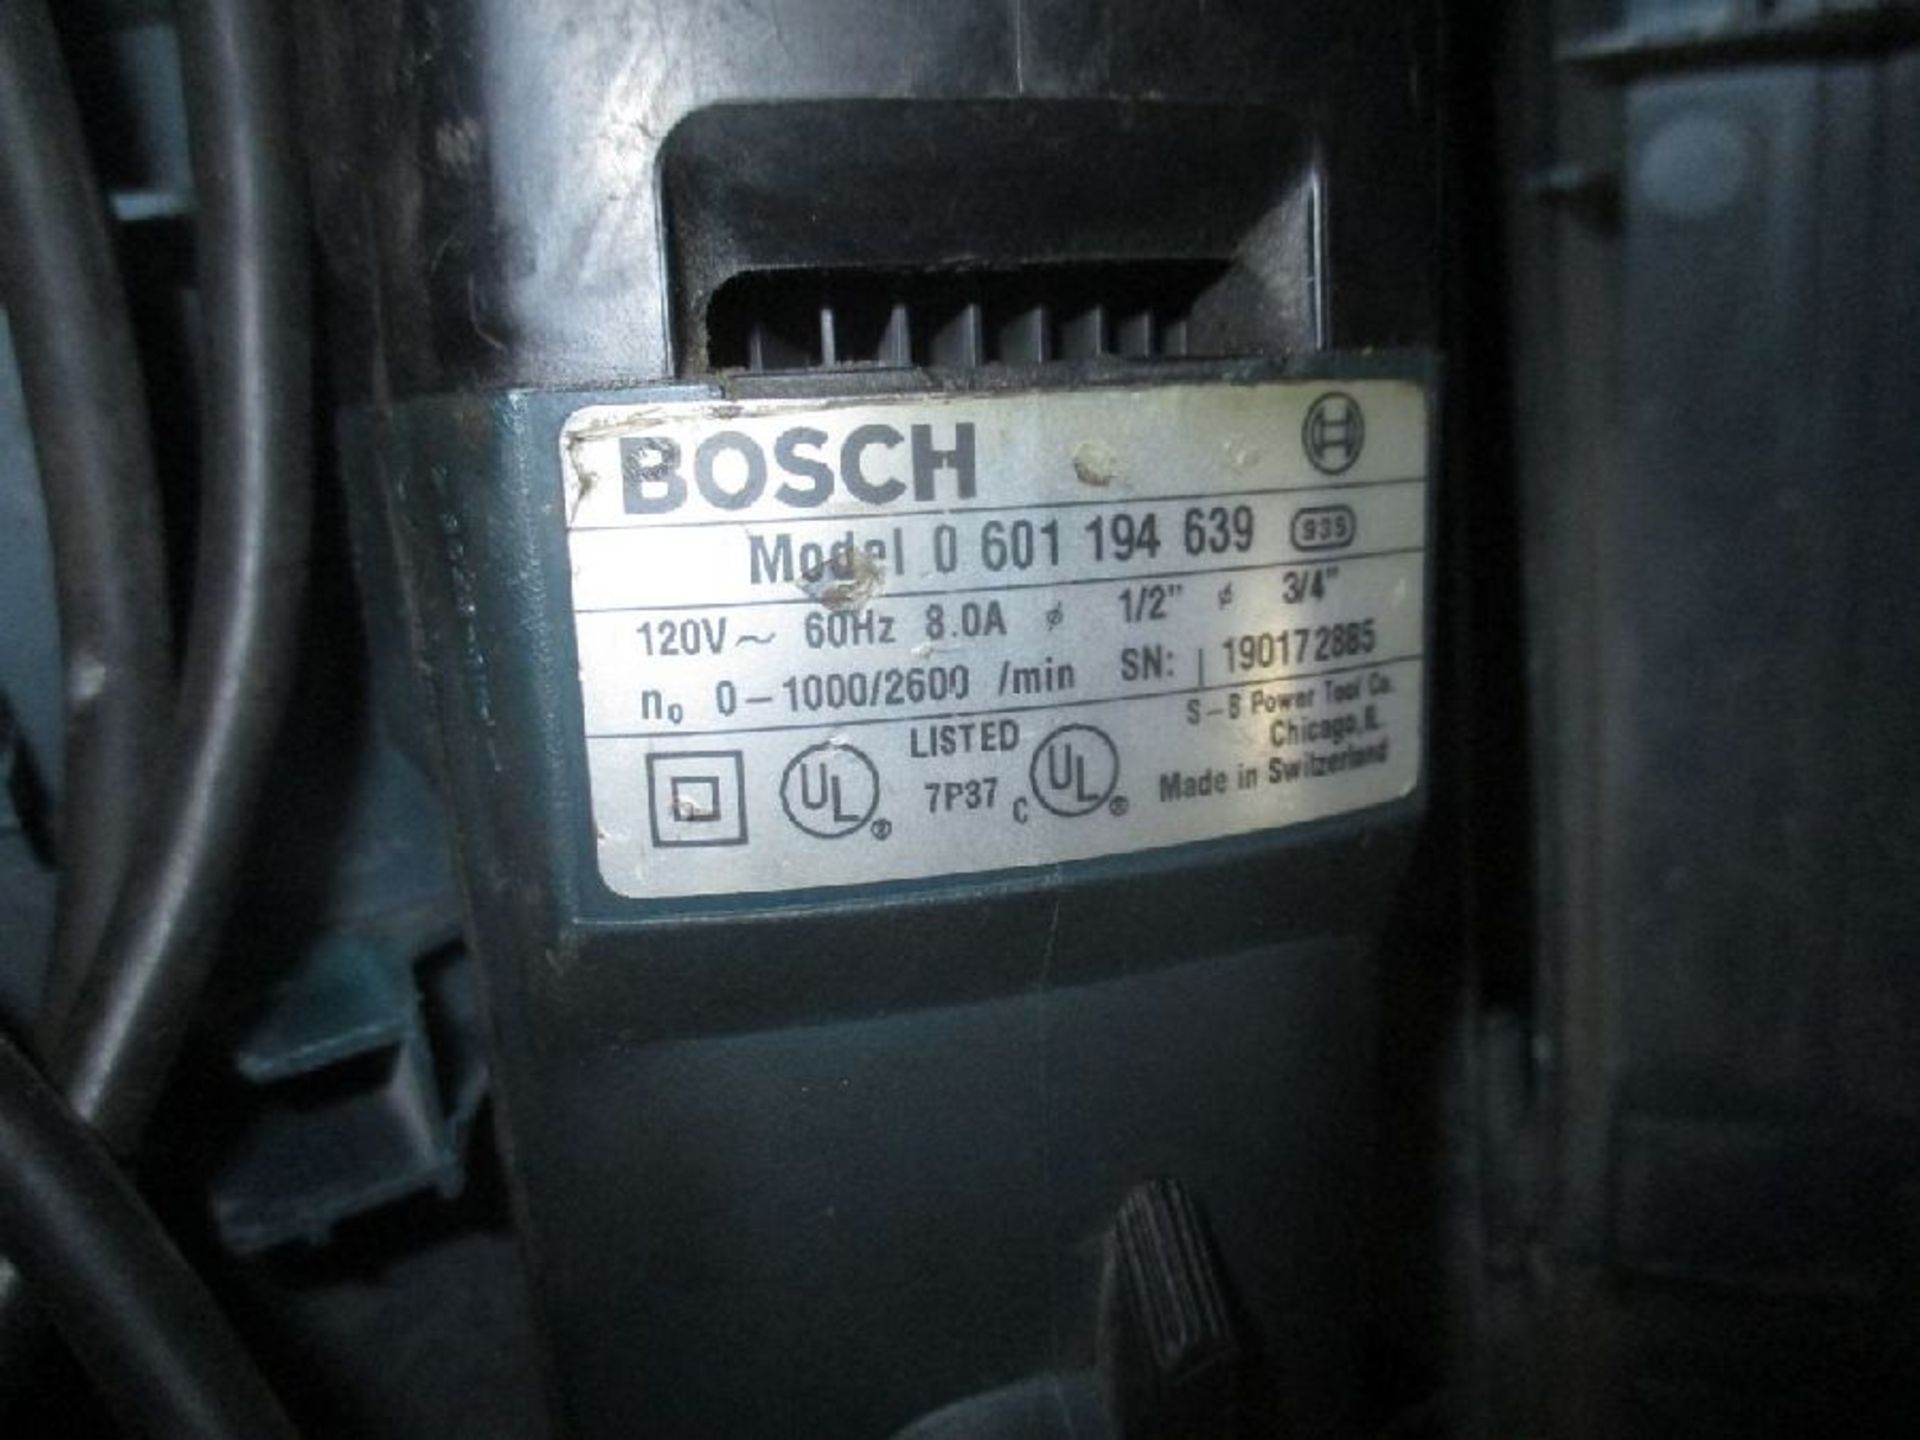 Bosch Model 0 601 194 639 Rotary Hammer Drill - Image 4 of 4